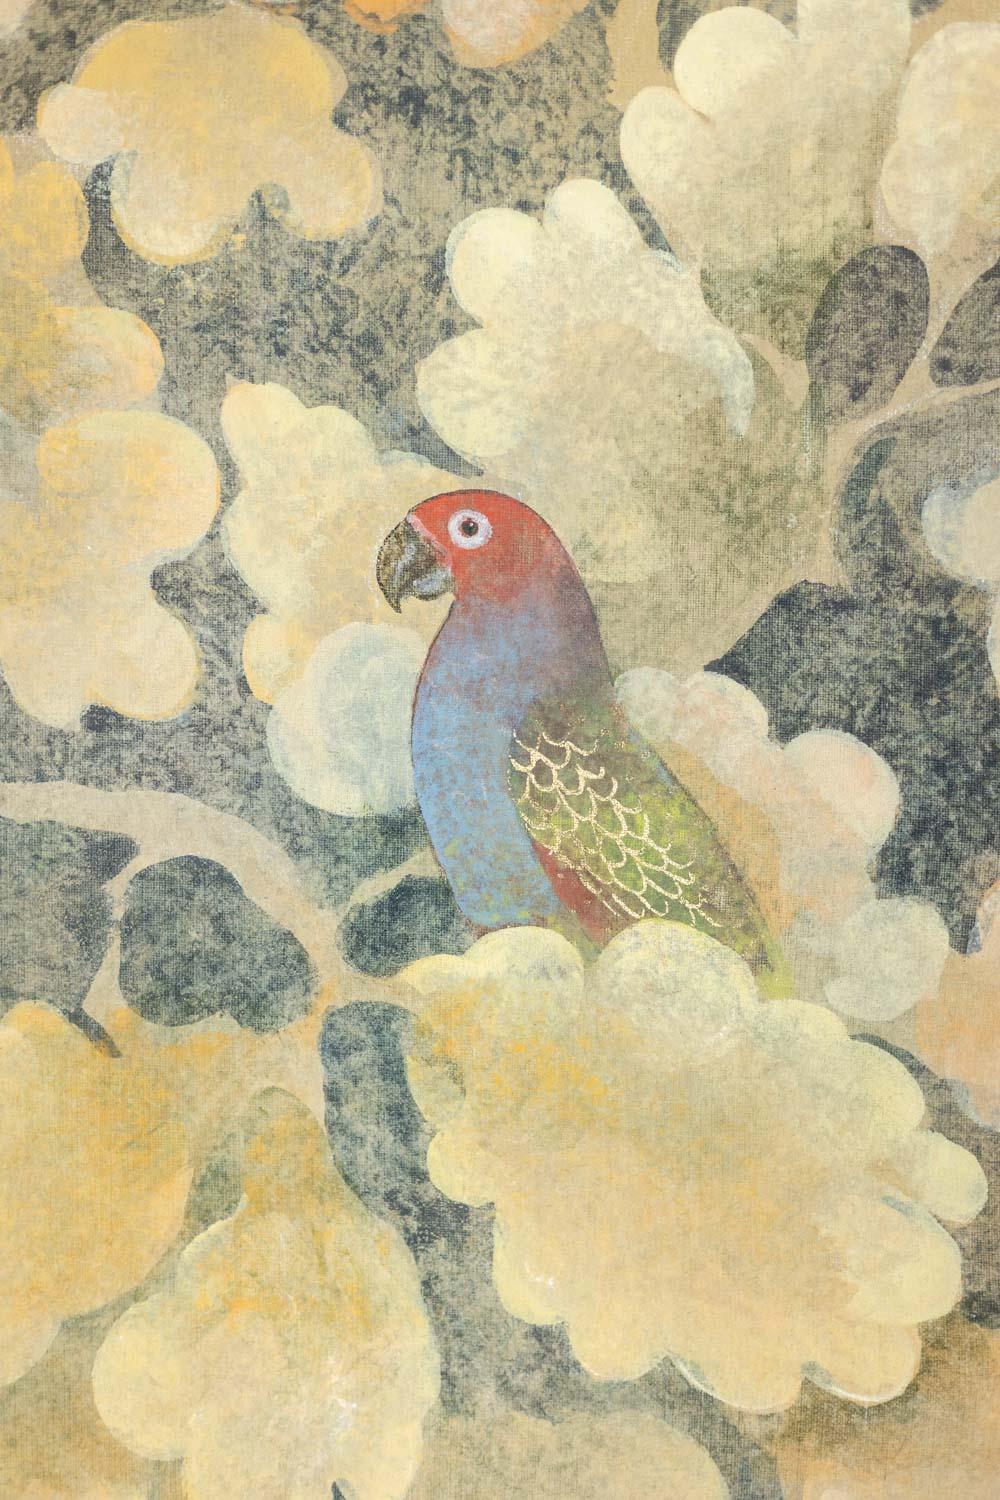 Gemalte Leinwand oder dekorative Tafel, die Vögel in Rottönen darstellt, die auf ihren Ästen stehen, auf einem Hintergrund aus Laub in Grüntönen.

Werke zeitgenössischer Künstler.

Referenz: LS5723B675T

Möglichkeit, ein Paar mit einer anderen